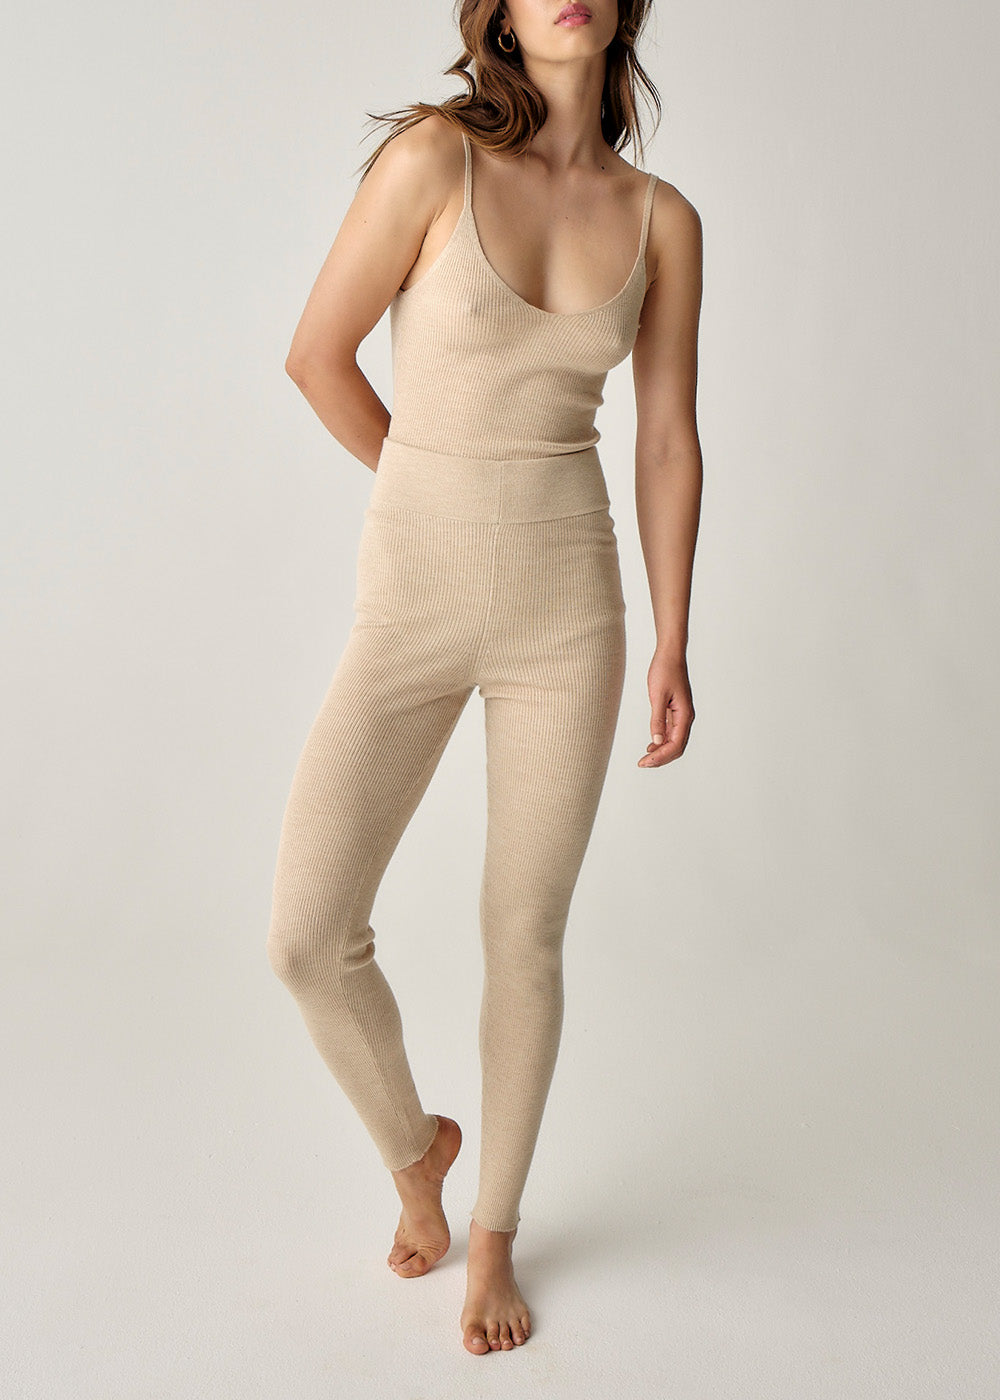 Joni Fine Knit Bodysuit - Medium / Sandstone